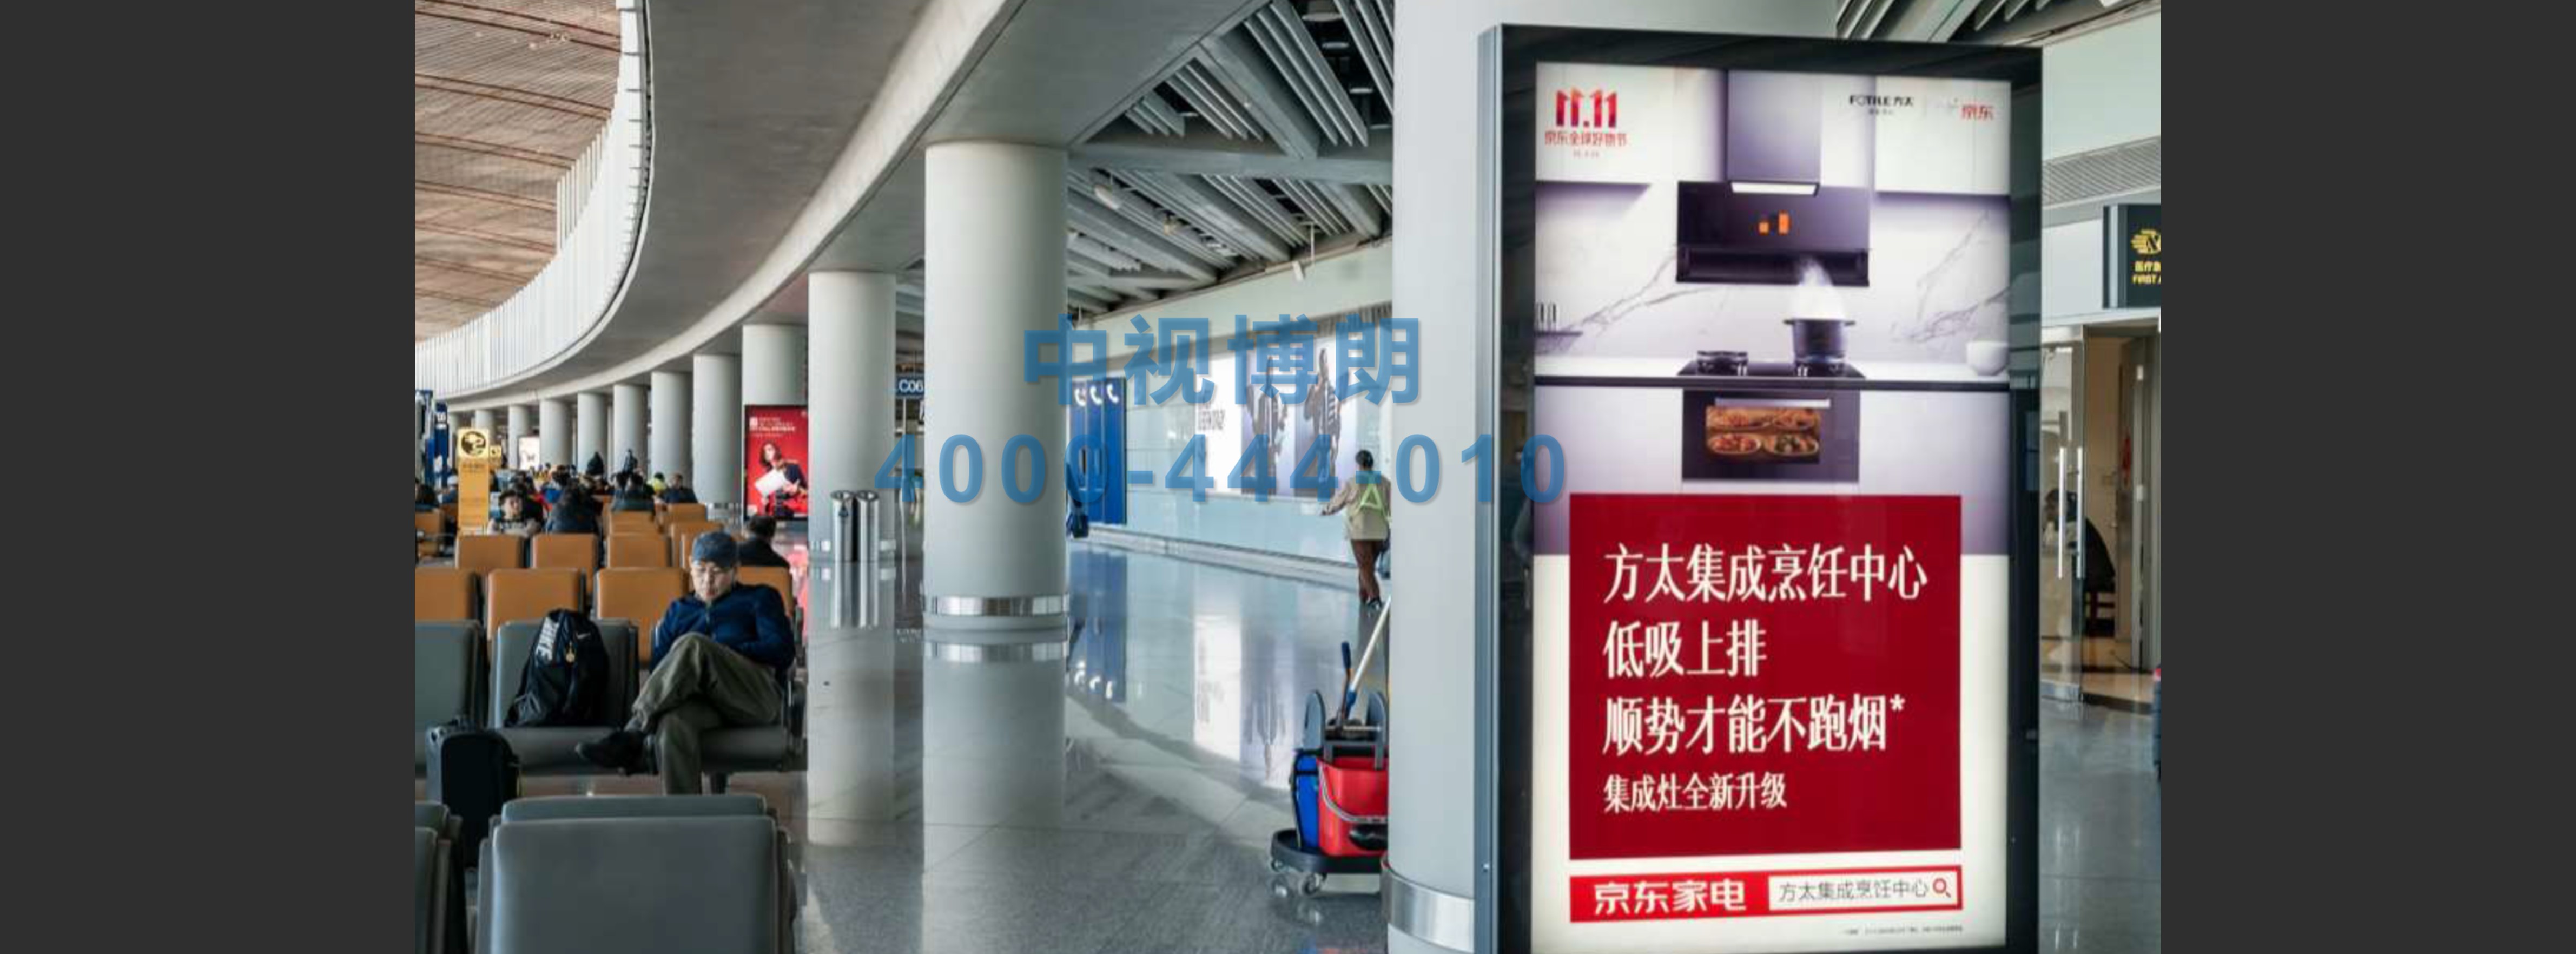 北京首都机场广告-T3C出发全覆盖9块滚动灯箱